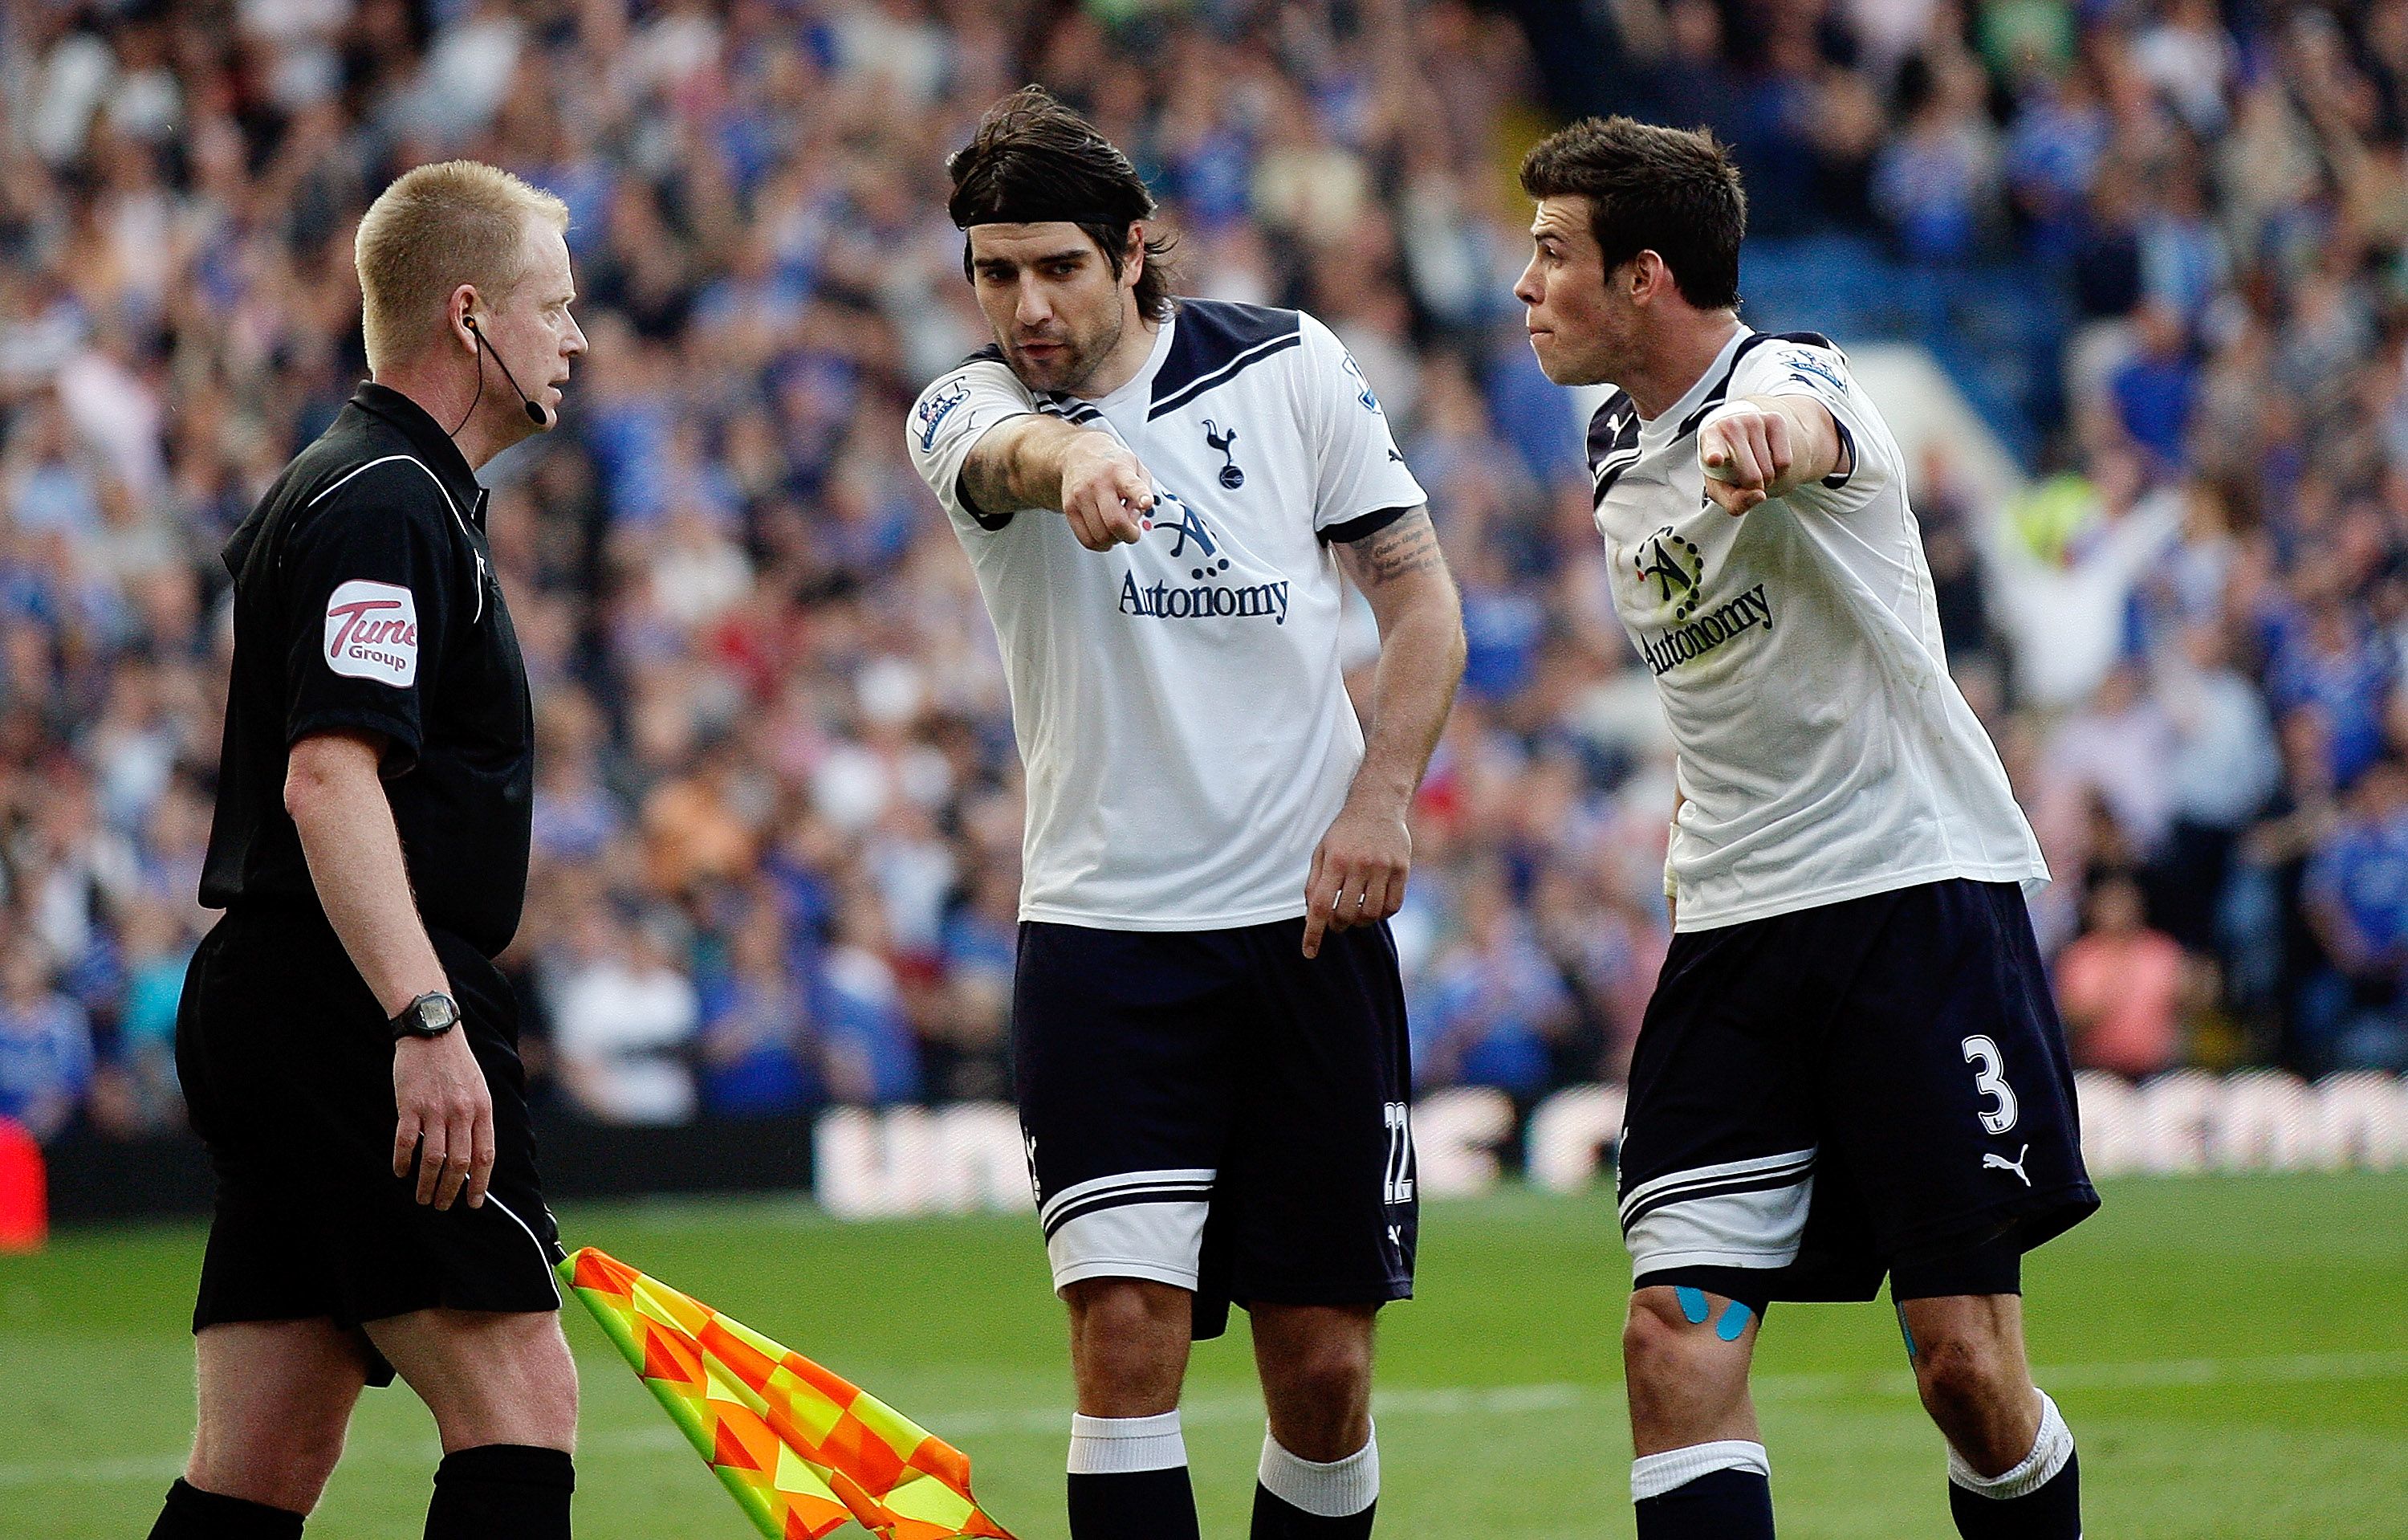 Tottenhamspelarna blev galna efter linjemannens beslut. 